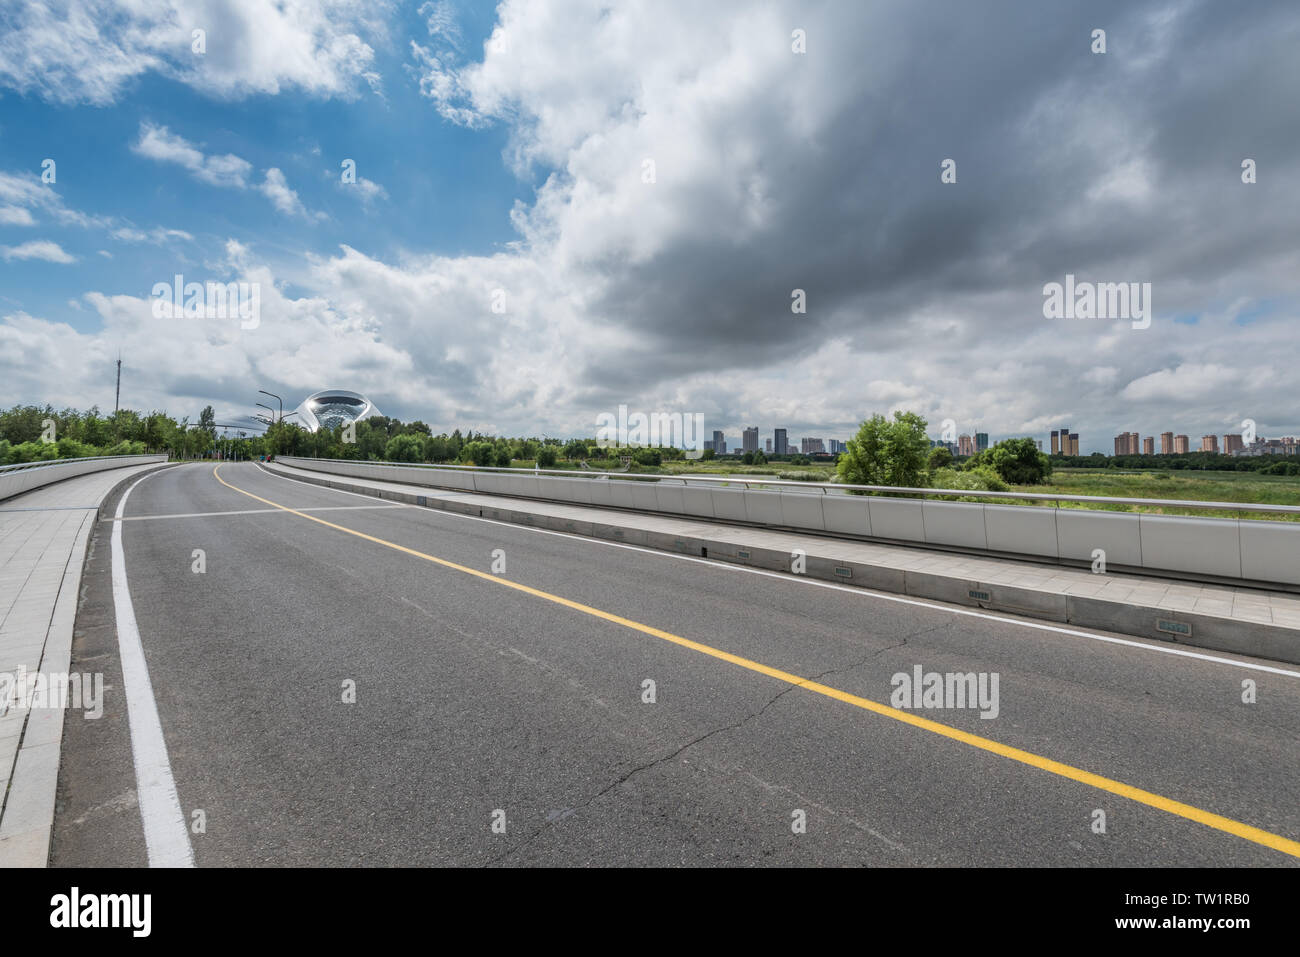 Tiempo nublado fondo coche city road. Foto de stock